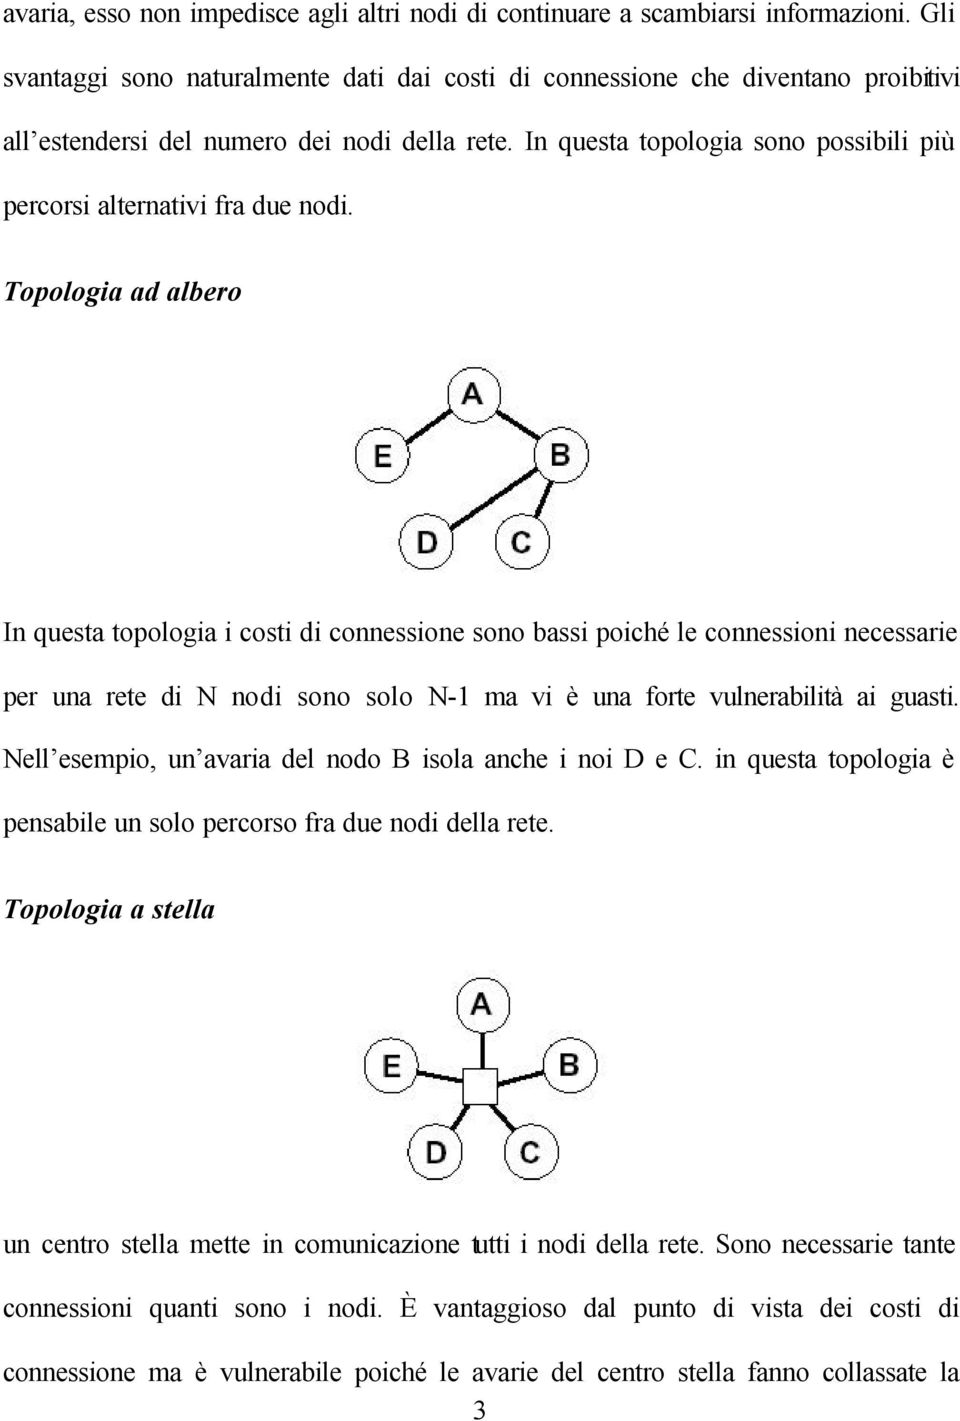 In questa topologia sono possibili più percorsi alternativi fra due nodi.